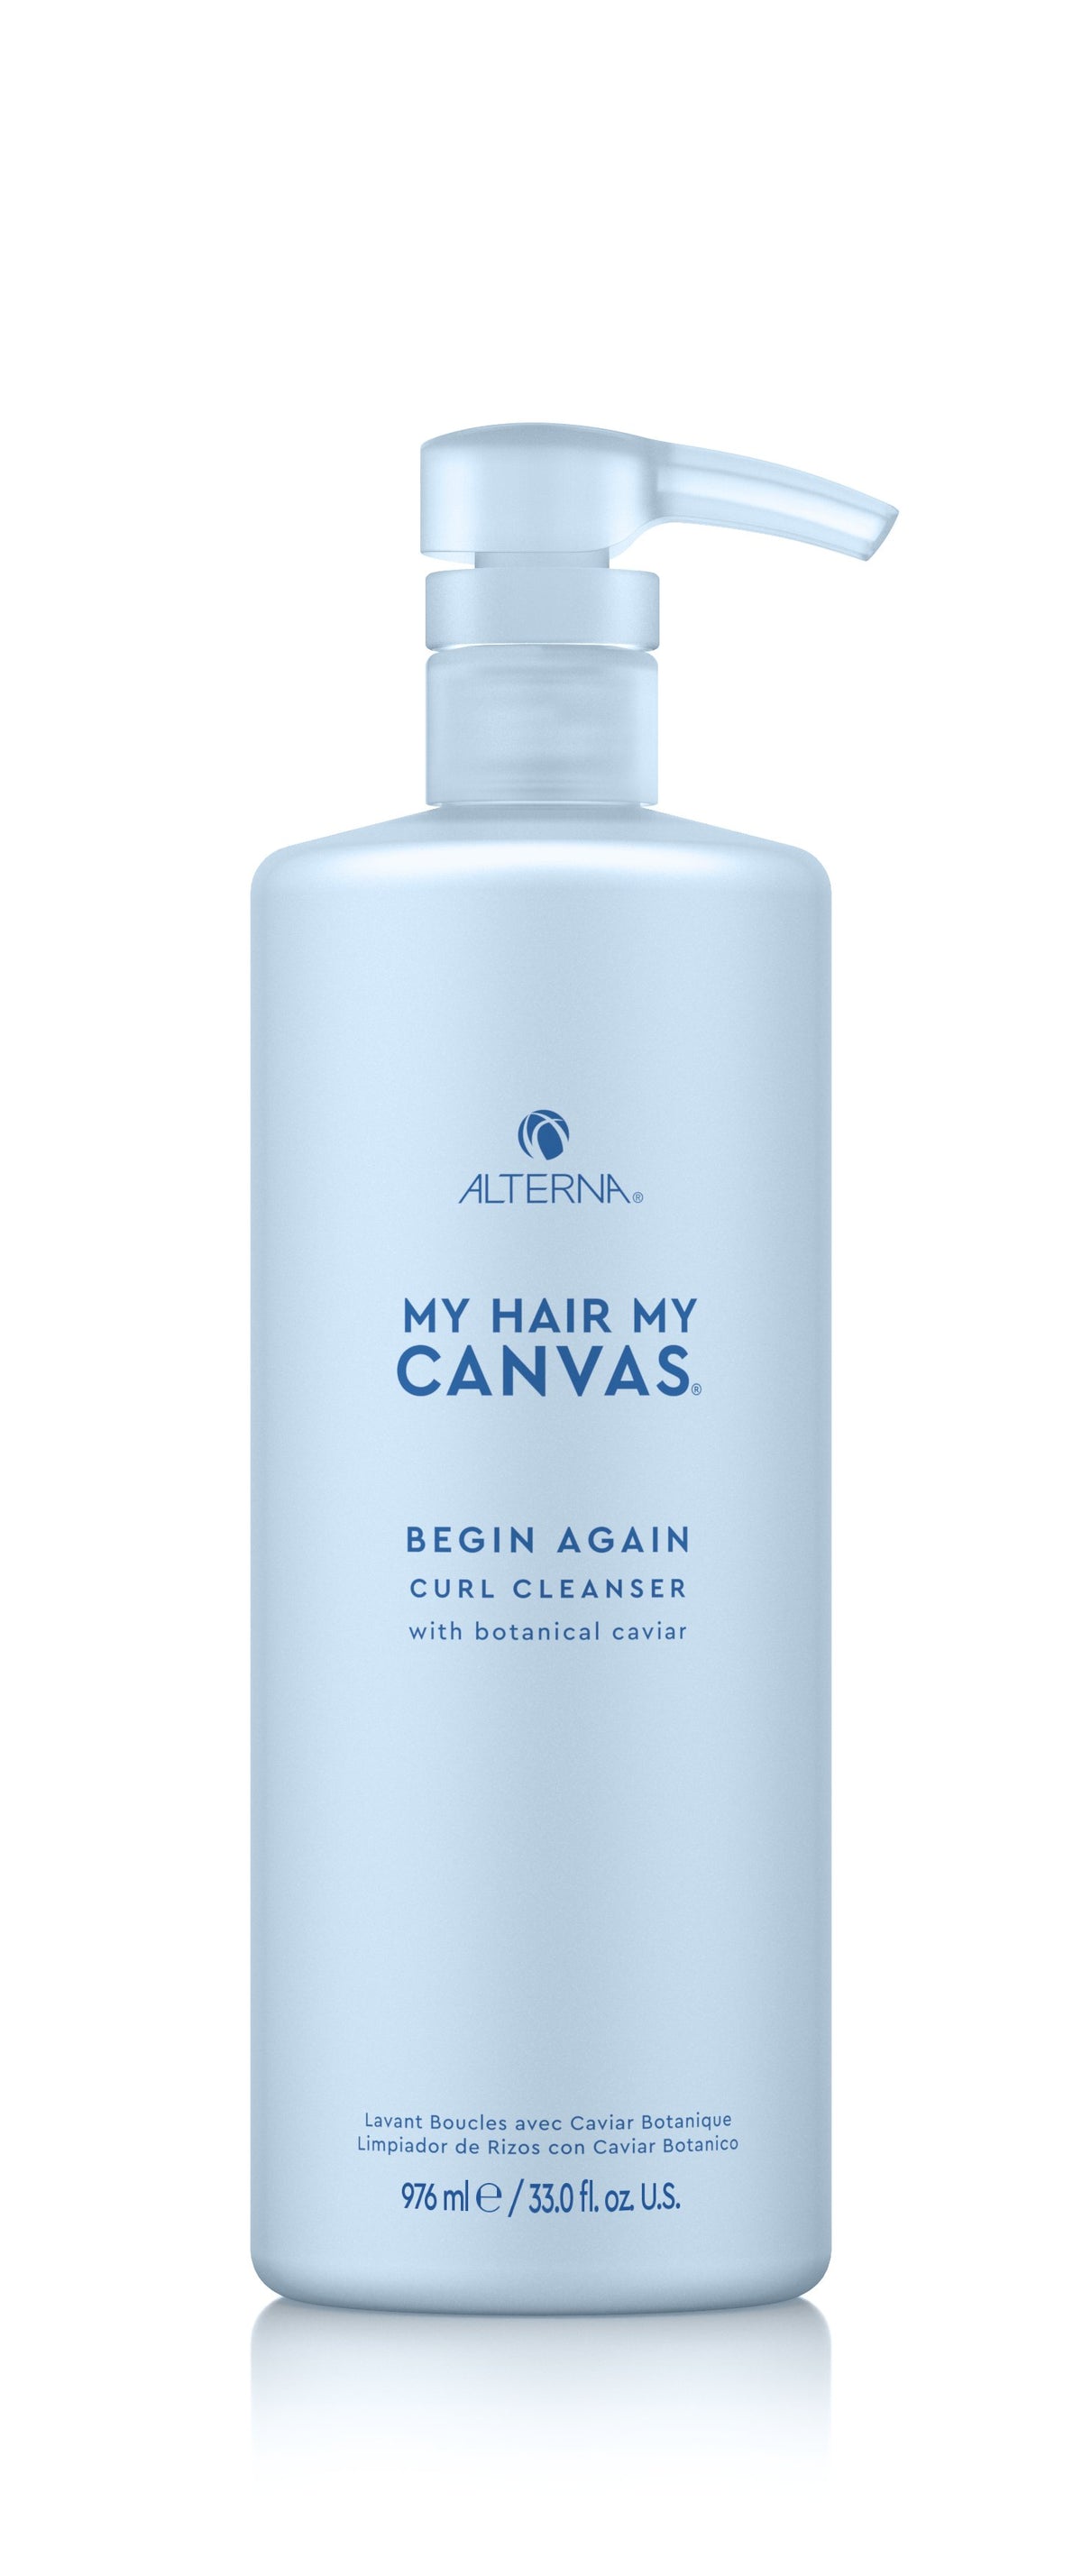 Alterna My Hair My Canvas Begin Again Curl Cleanser Shampoo 976 ml